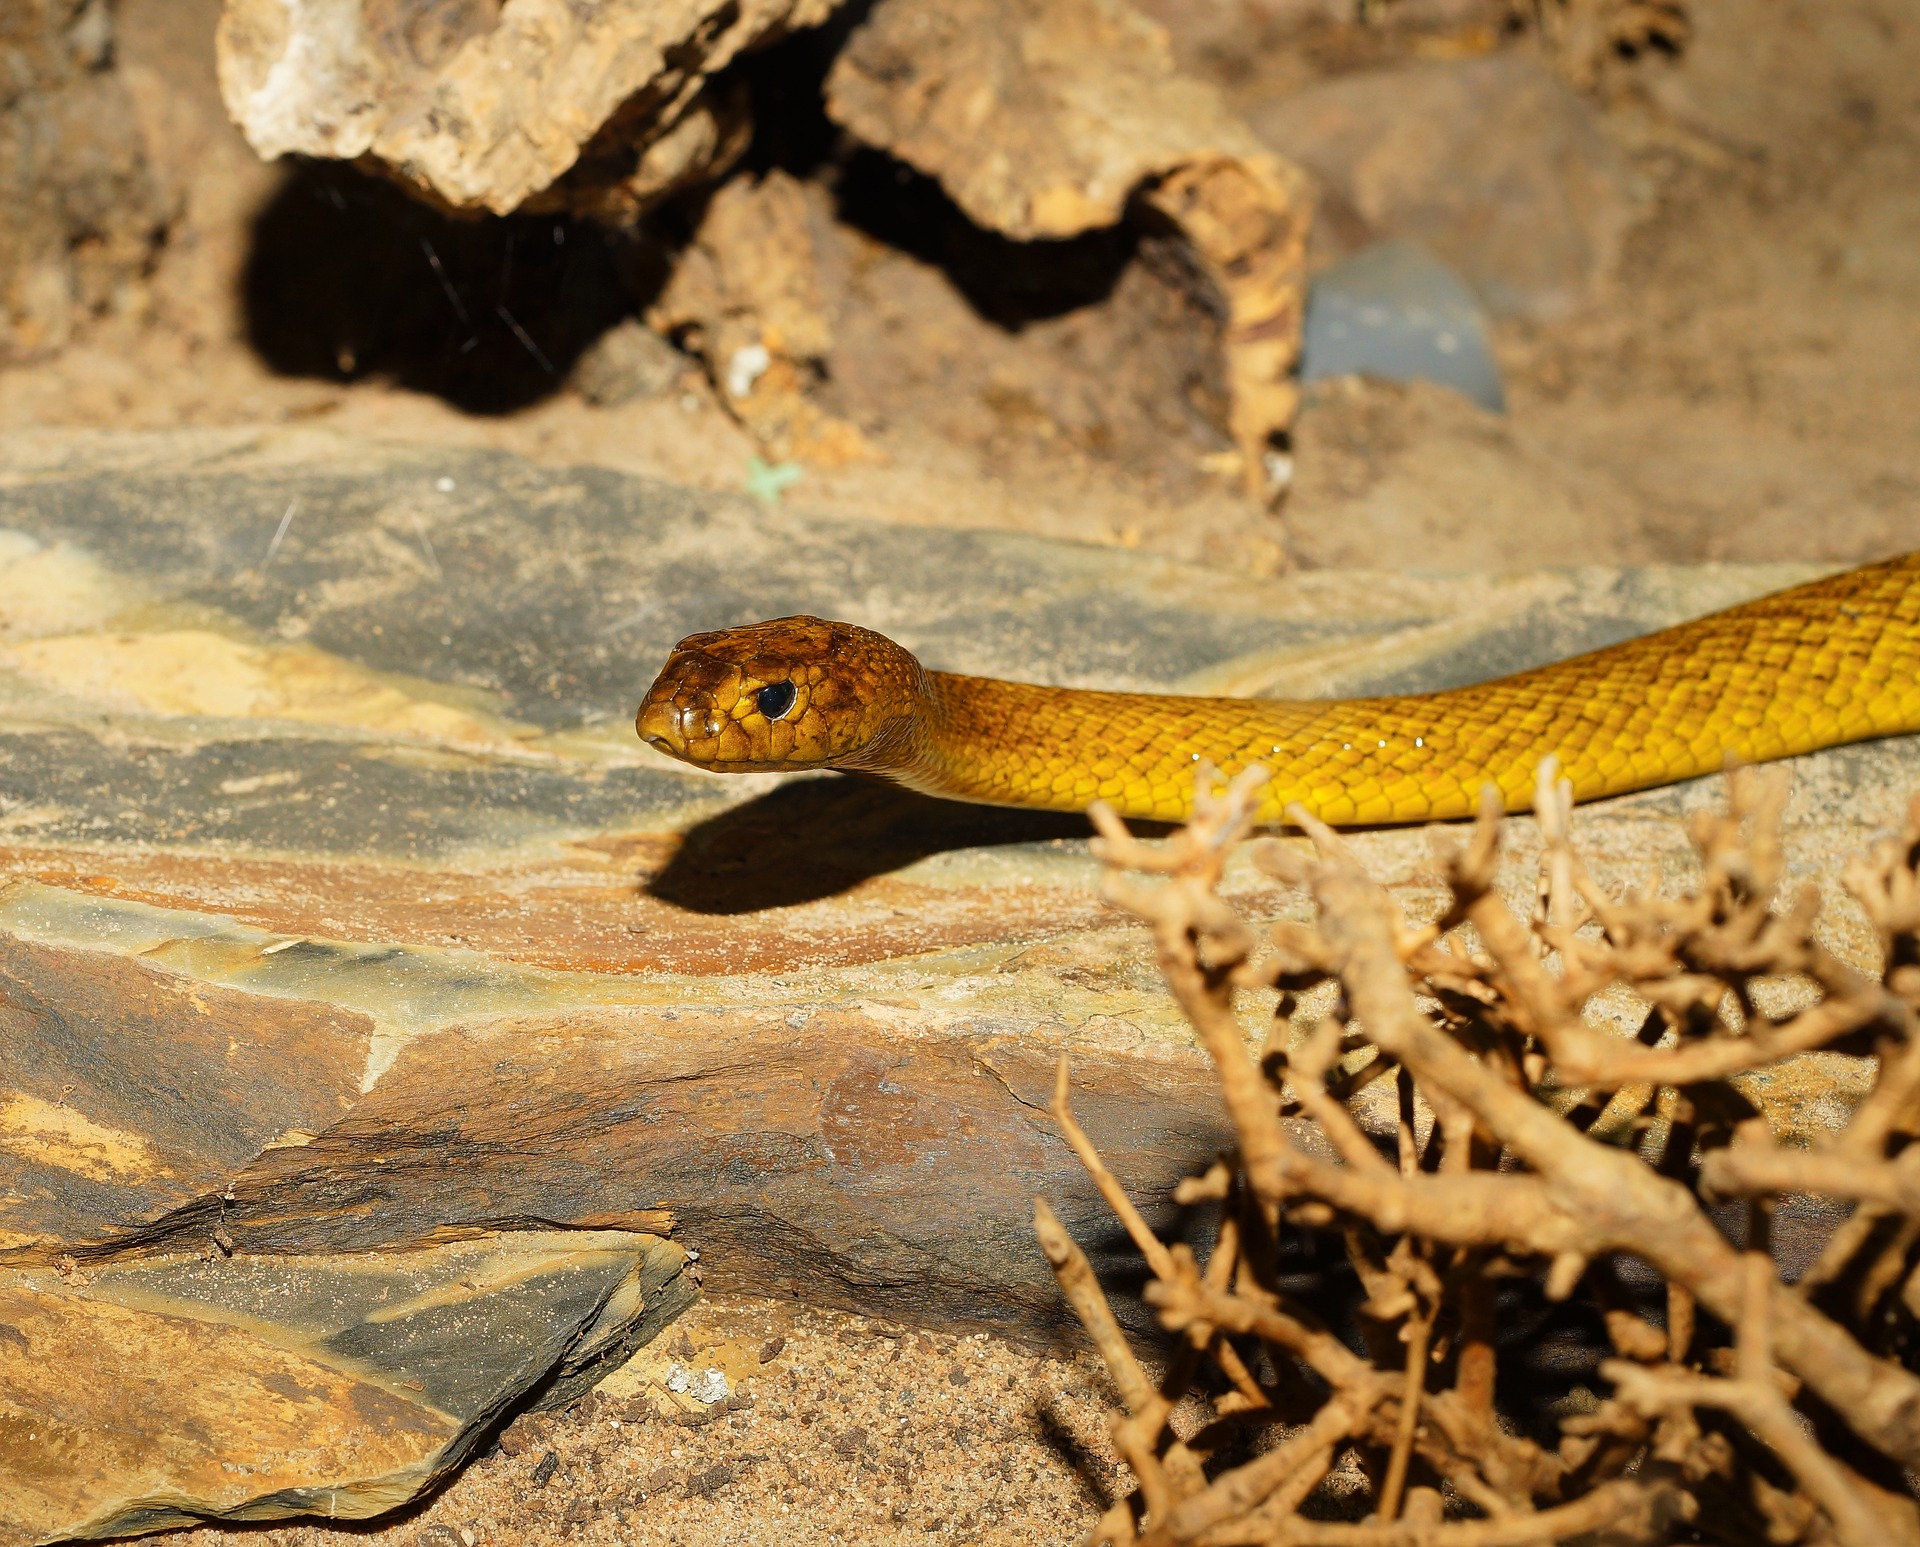 nejjedovatější had na světě - taipan menší